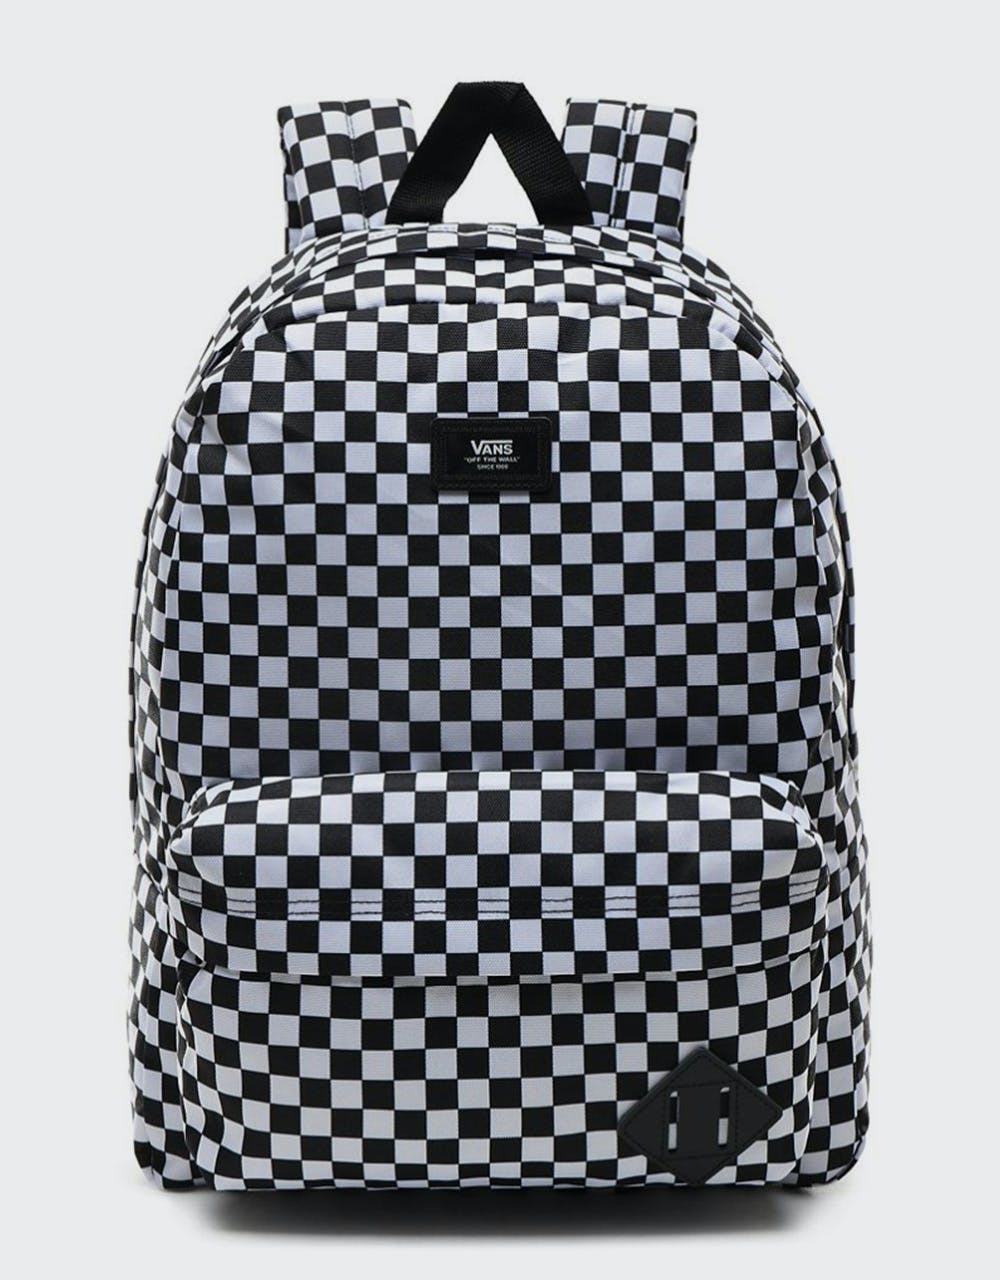 Vans Old Skool III Backpack - Black/White Check